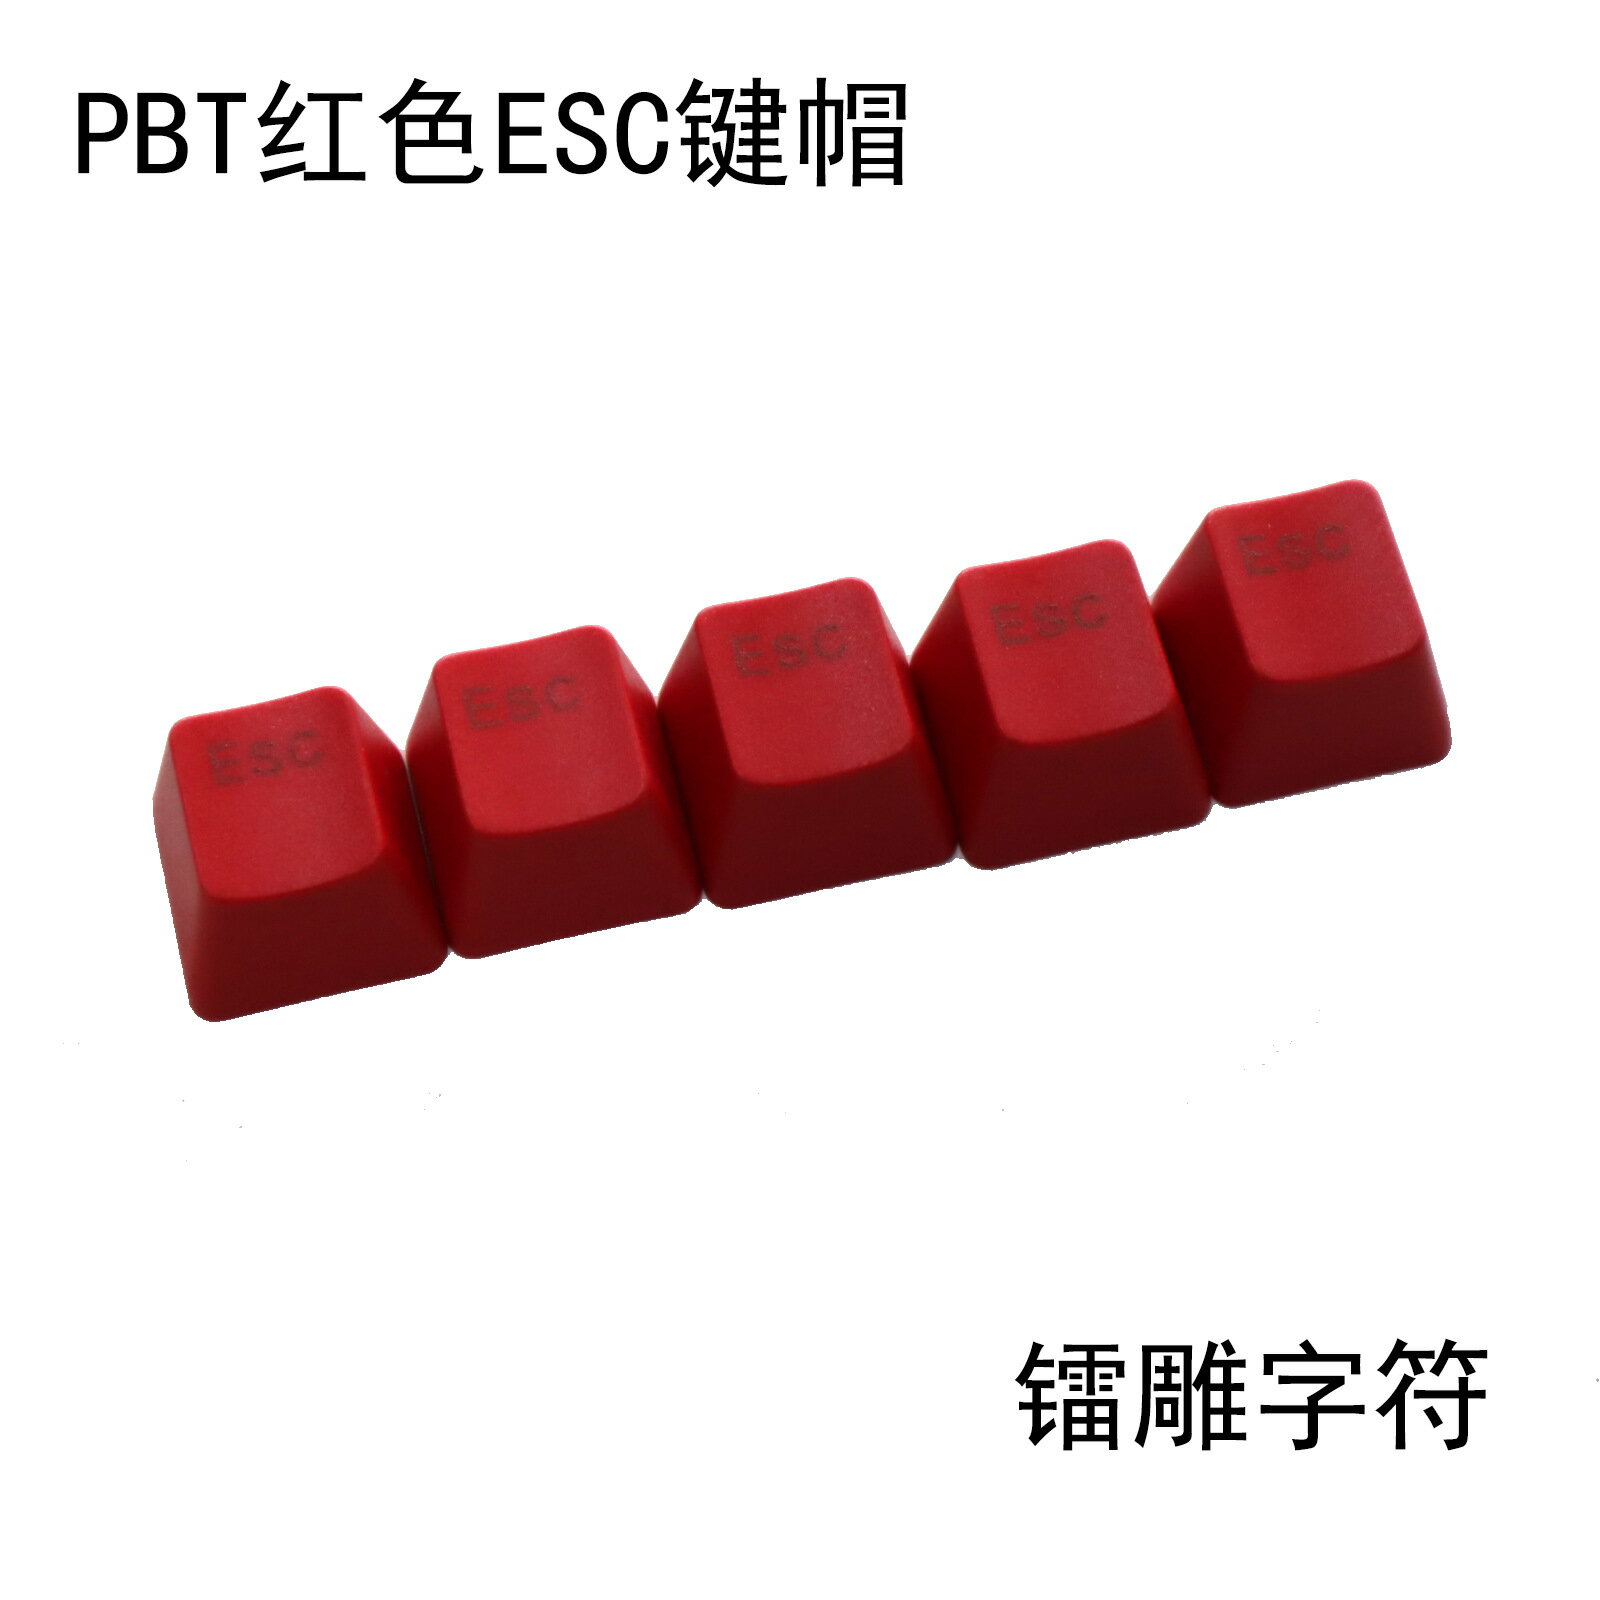 PBT材質R4高度單顆十字柱軸機械鍵盤帽增補贈送配色紅色ESC鍵帽4016